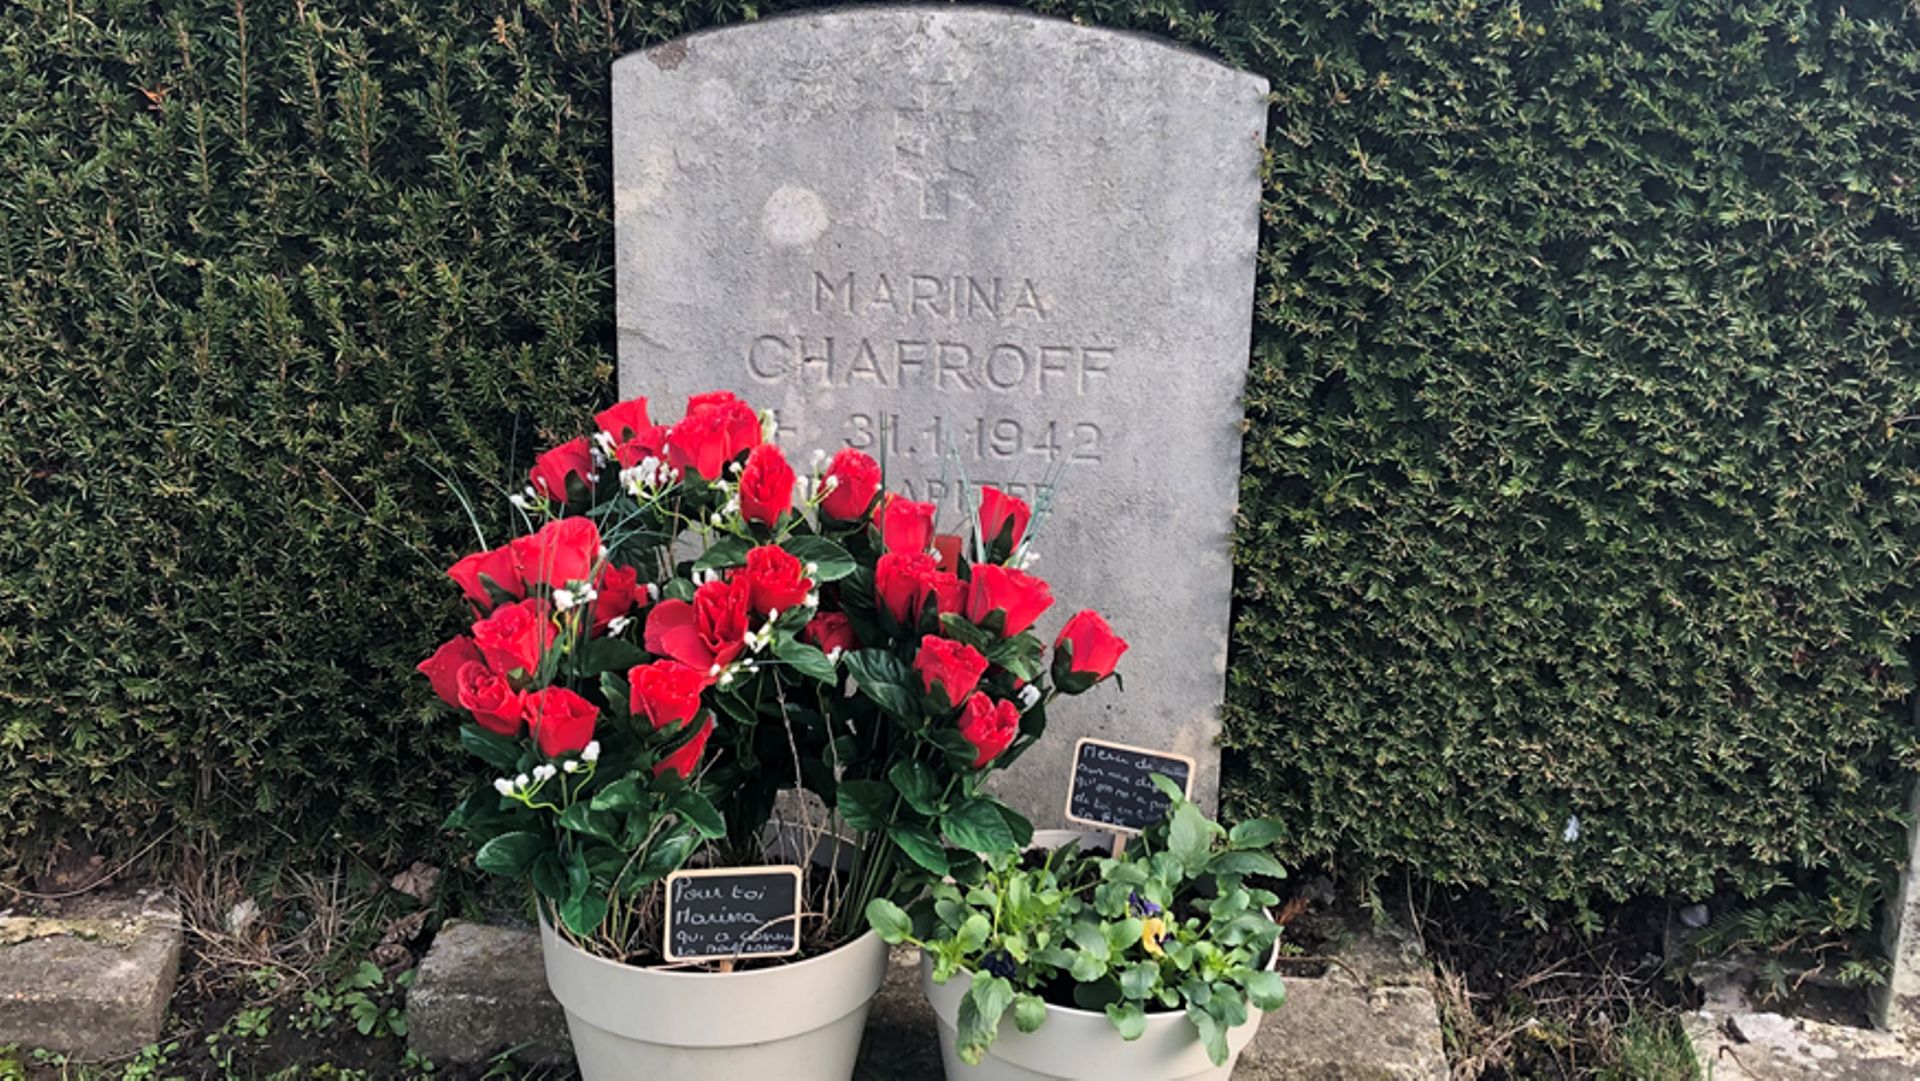 La tombe de Marina Chaffrof au cimetière d'Ixelles